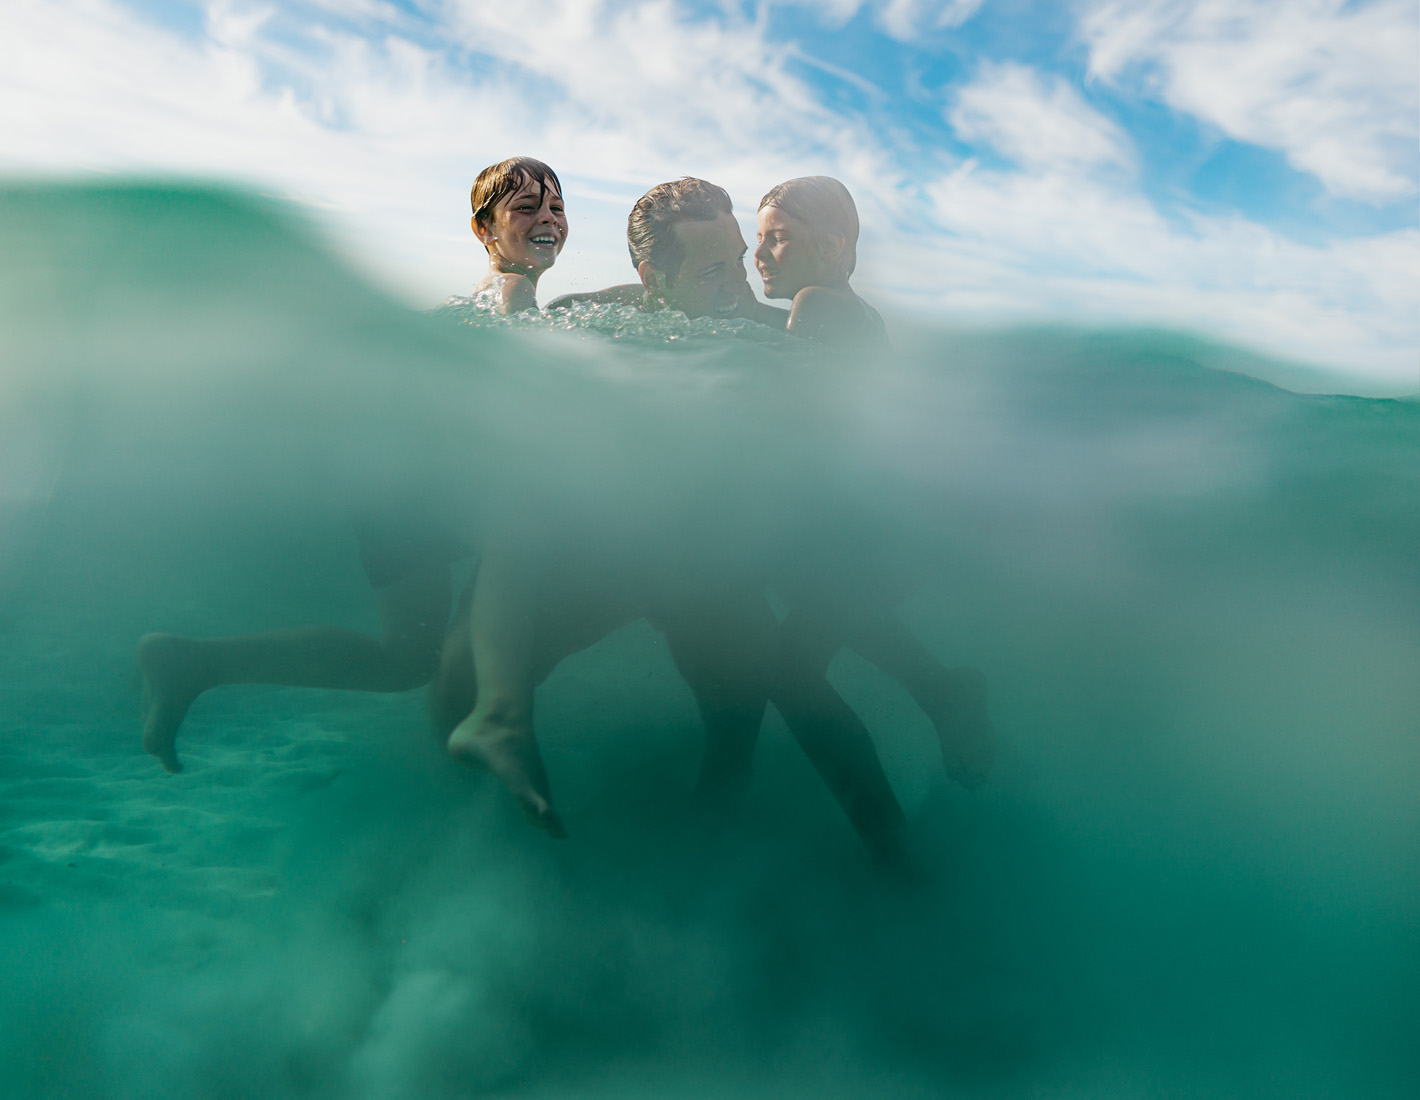 KKRiddle-Lifestyle Travel Children Underwater Photography